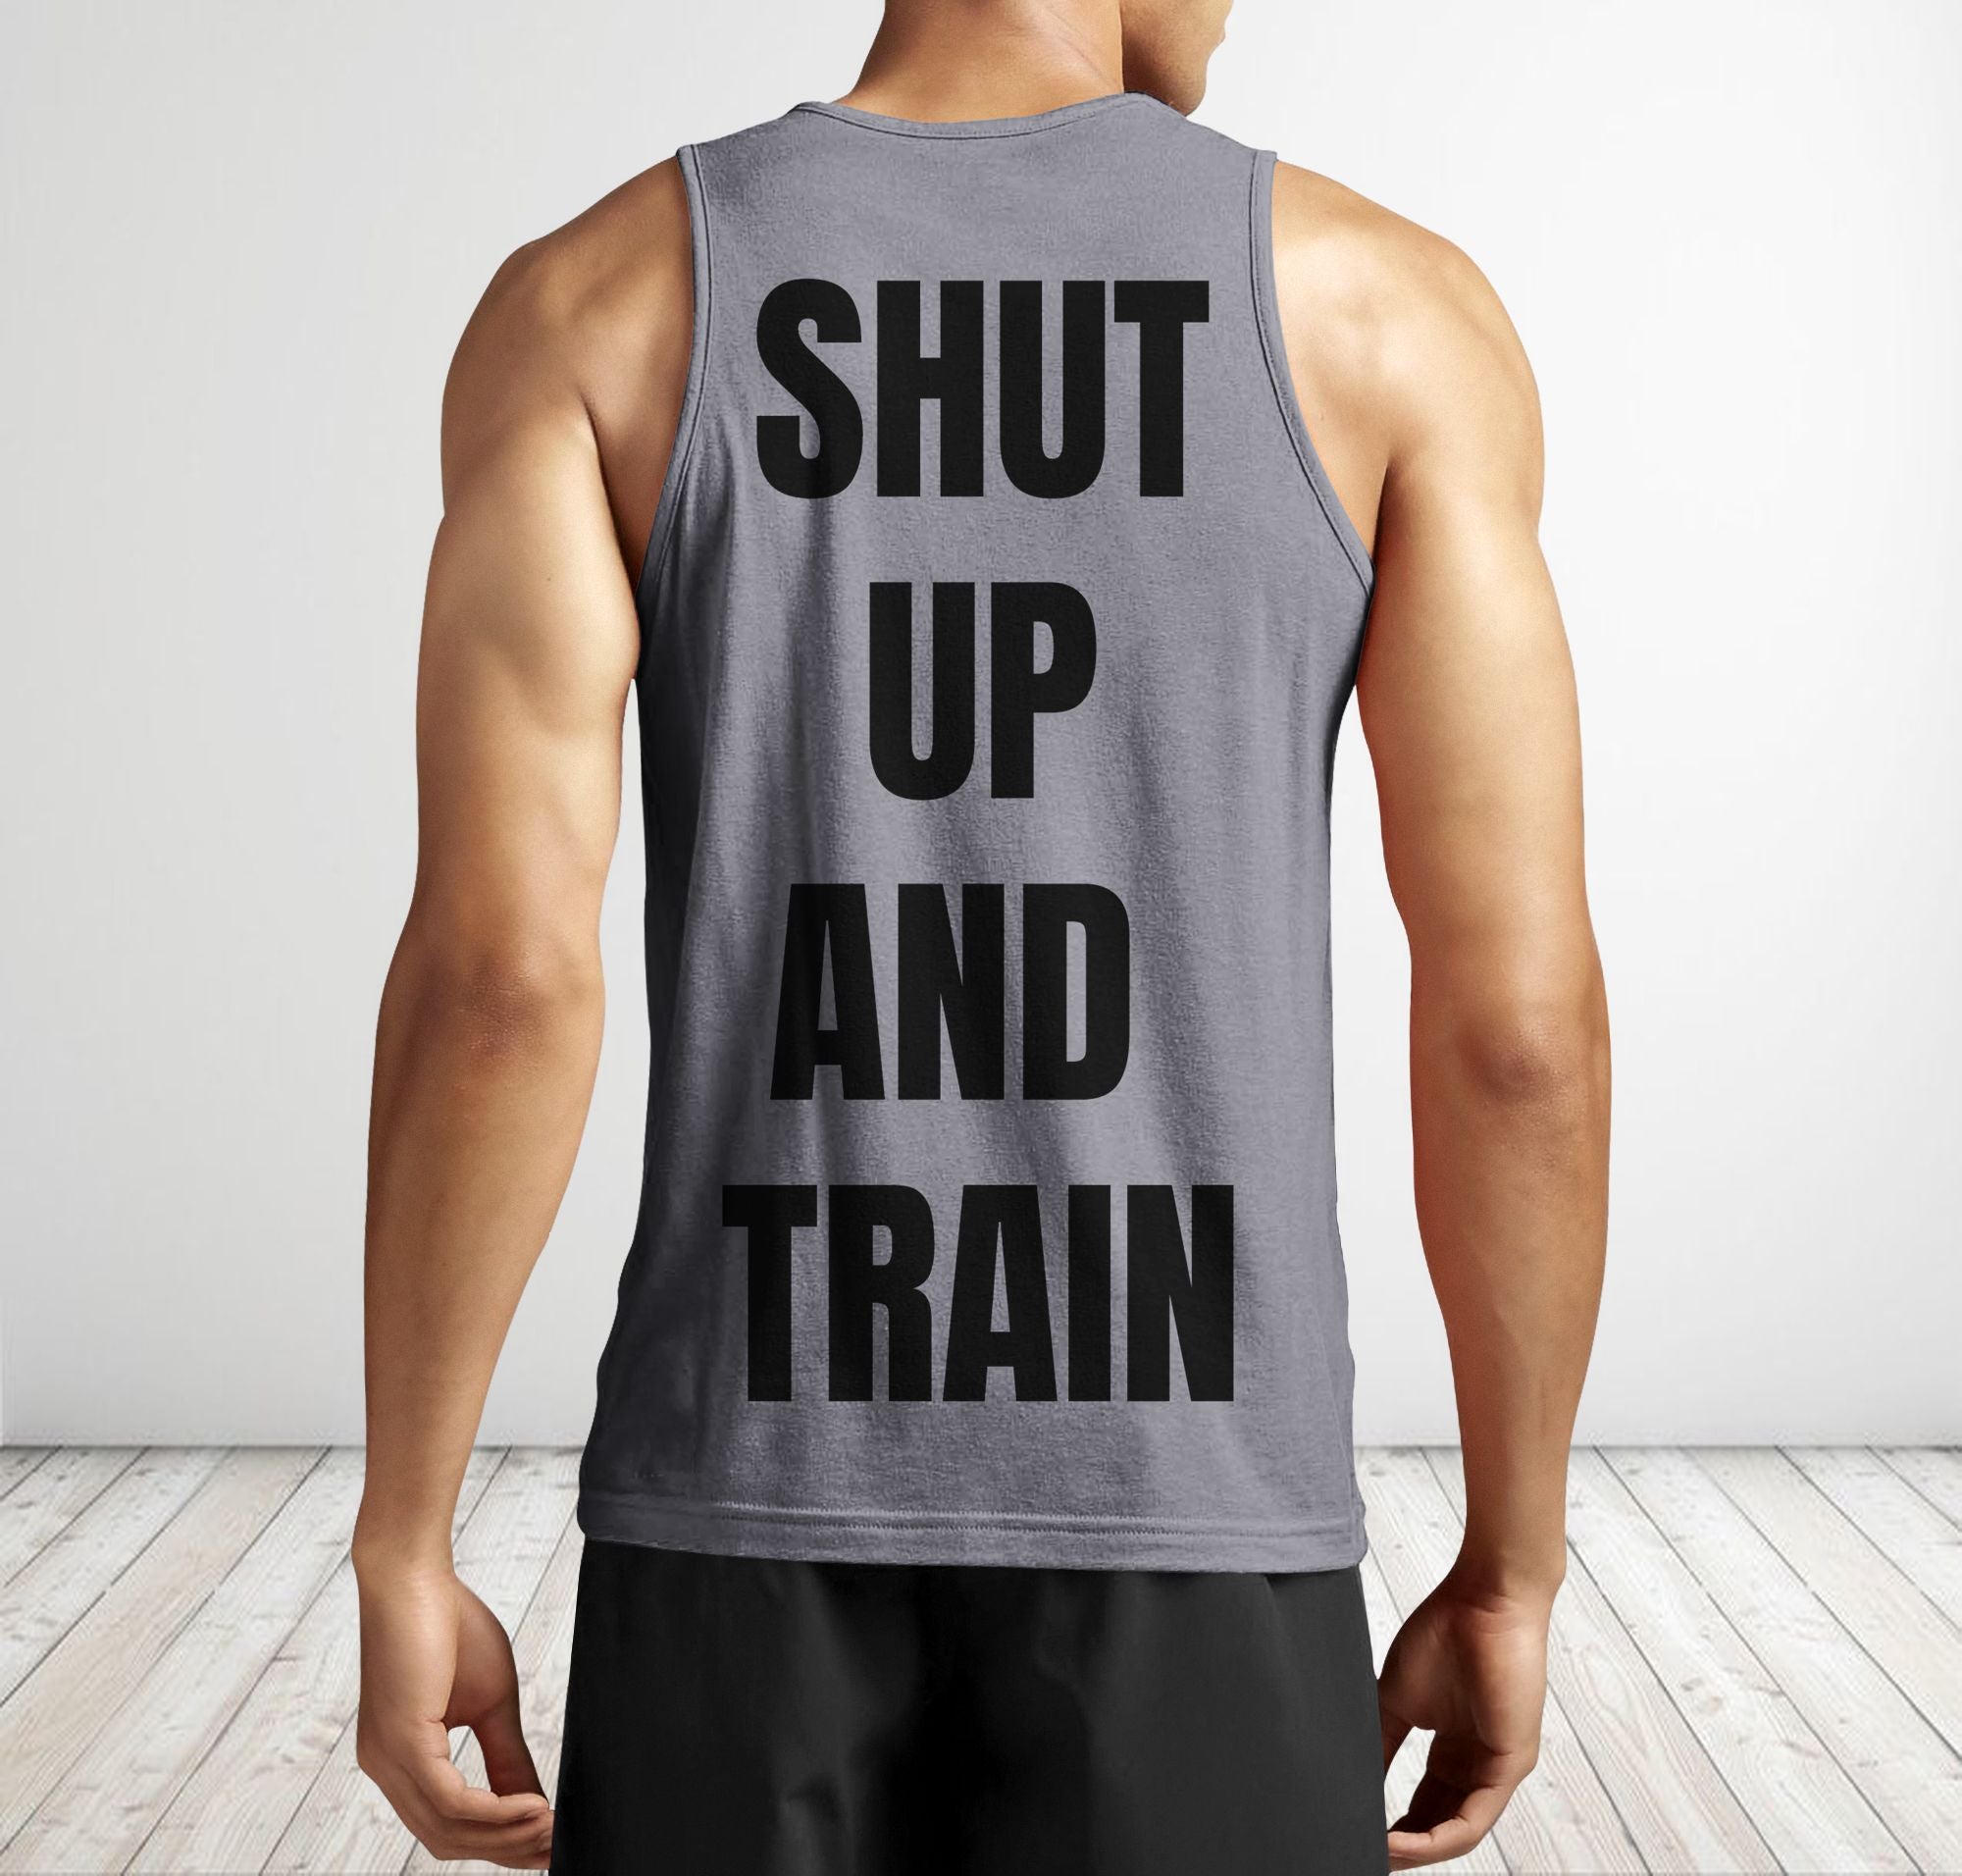 Men Gym Tank Tops Motivational Shirts Im Doing Math